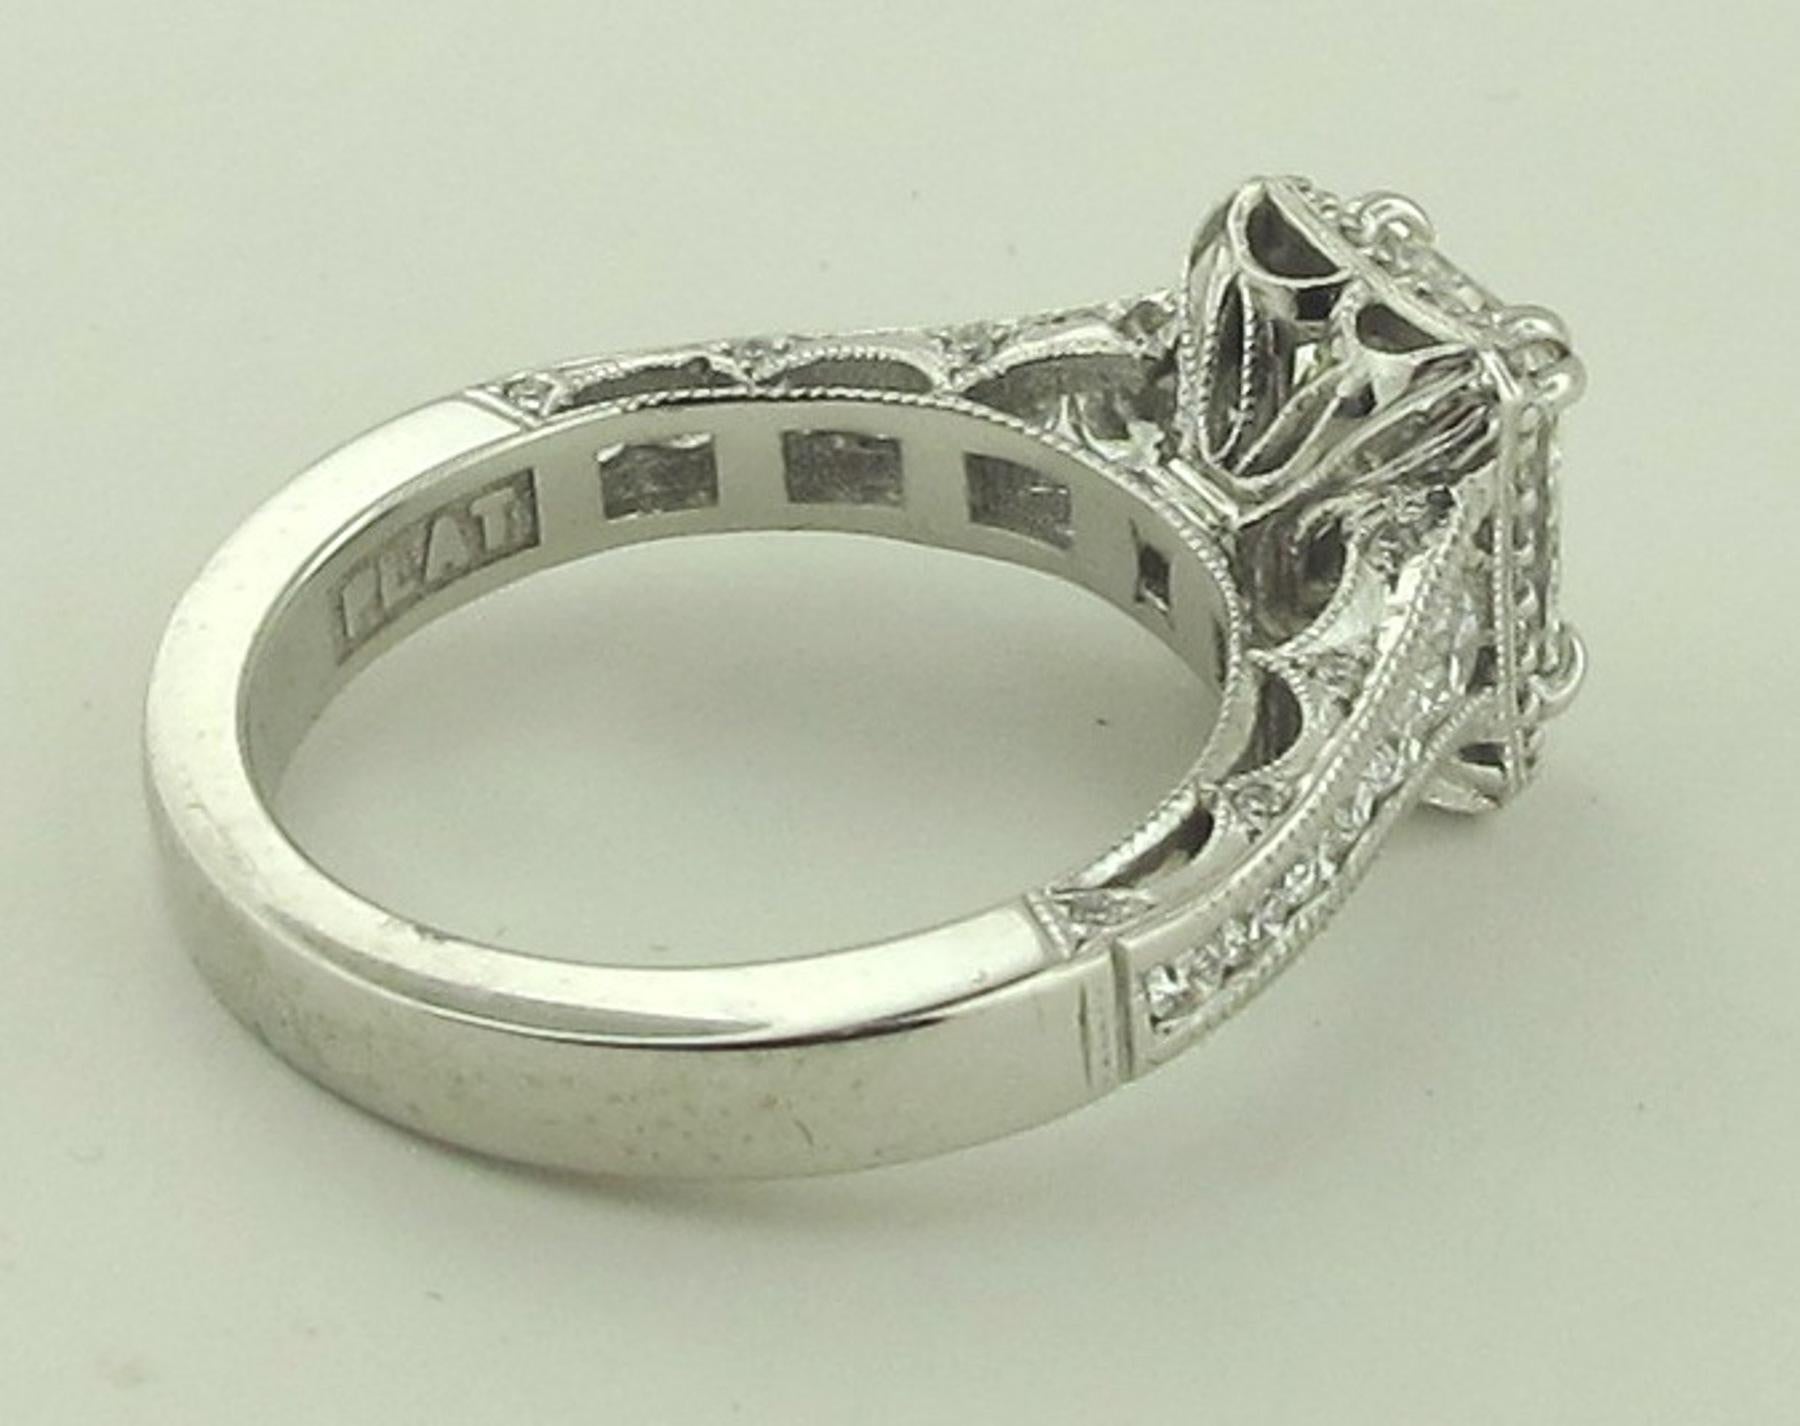 Women's or Men's 2.02 Carat Emerald Cut Diamond Ring in 18 Karat White Gold Tacori Plat Mounting